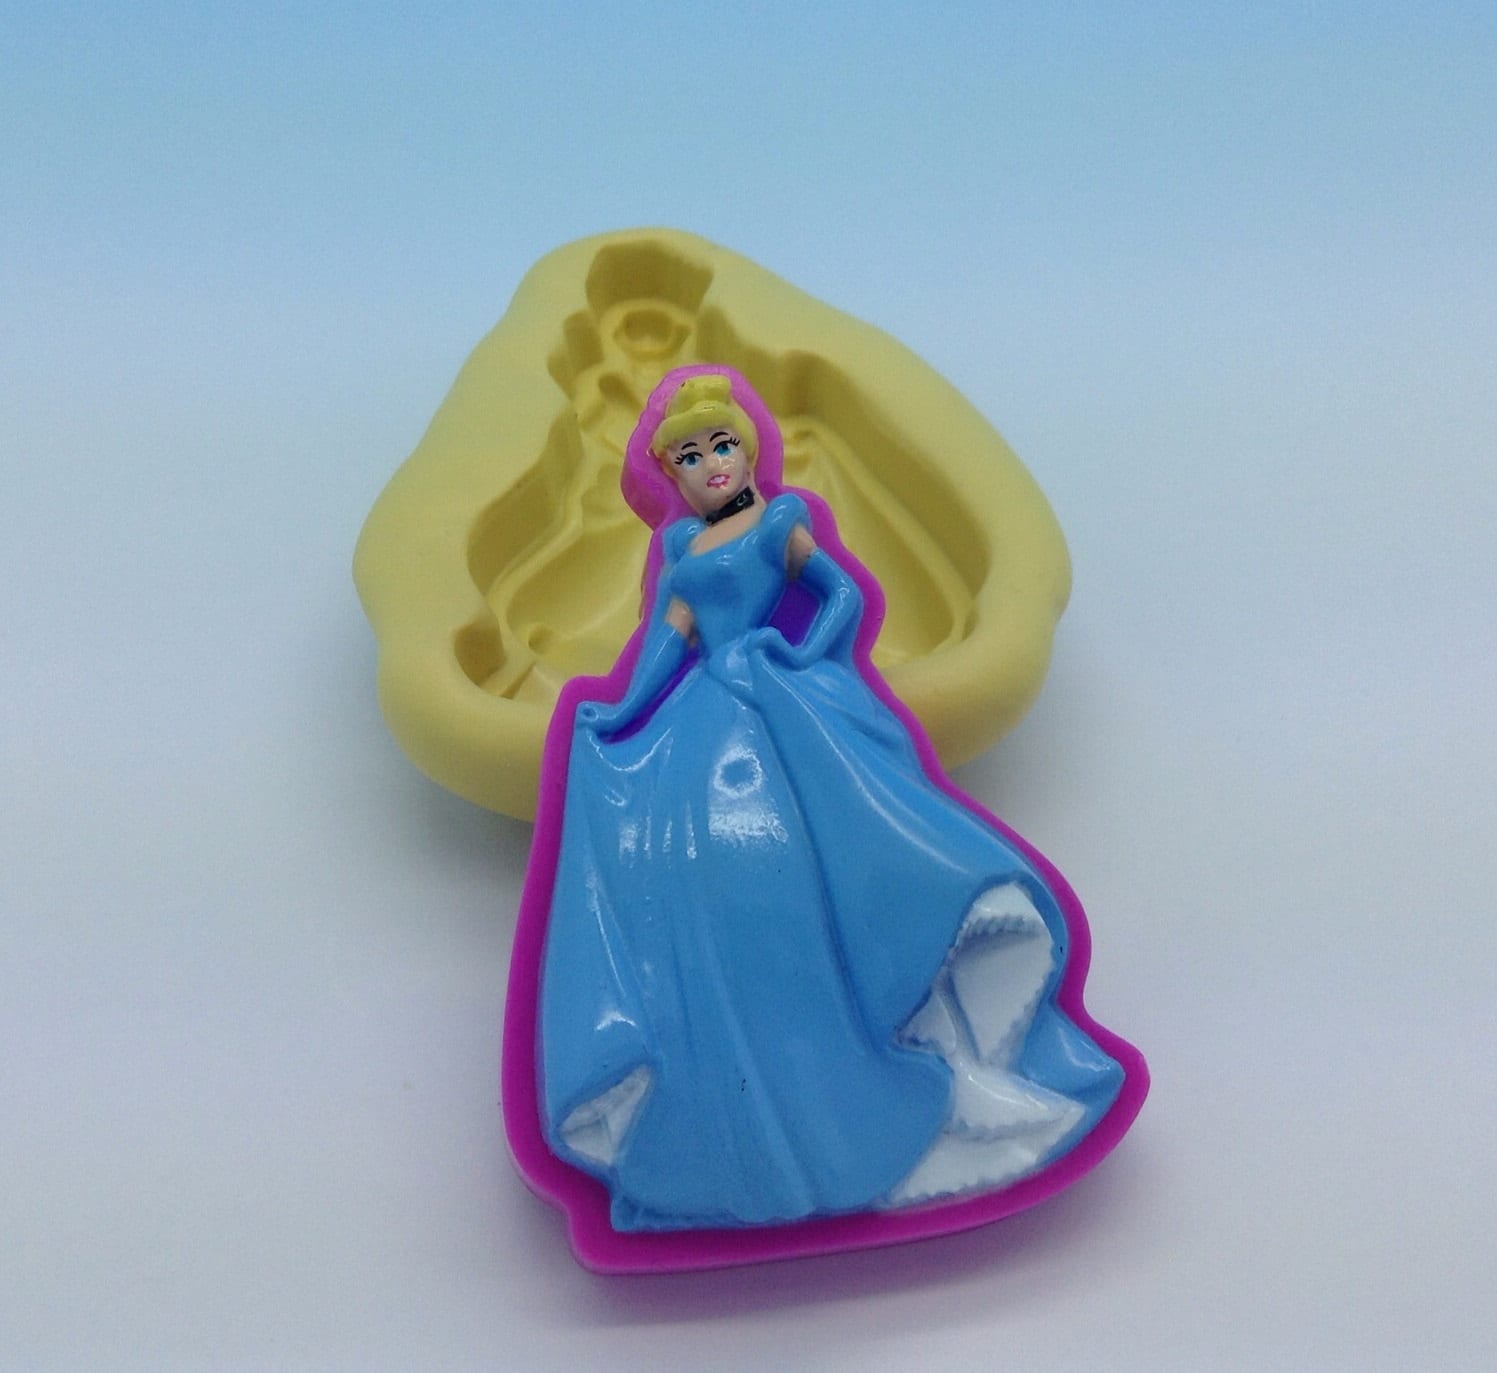 Disney Cinderella Polymer Clay Slices (40grams)